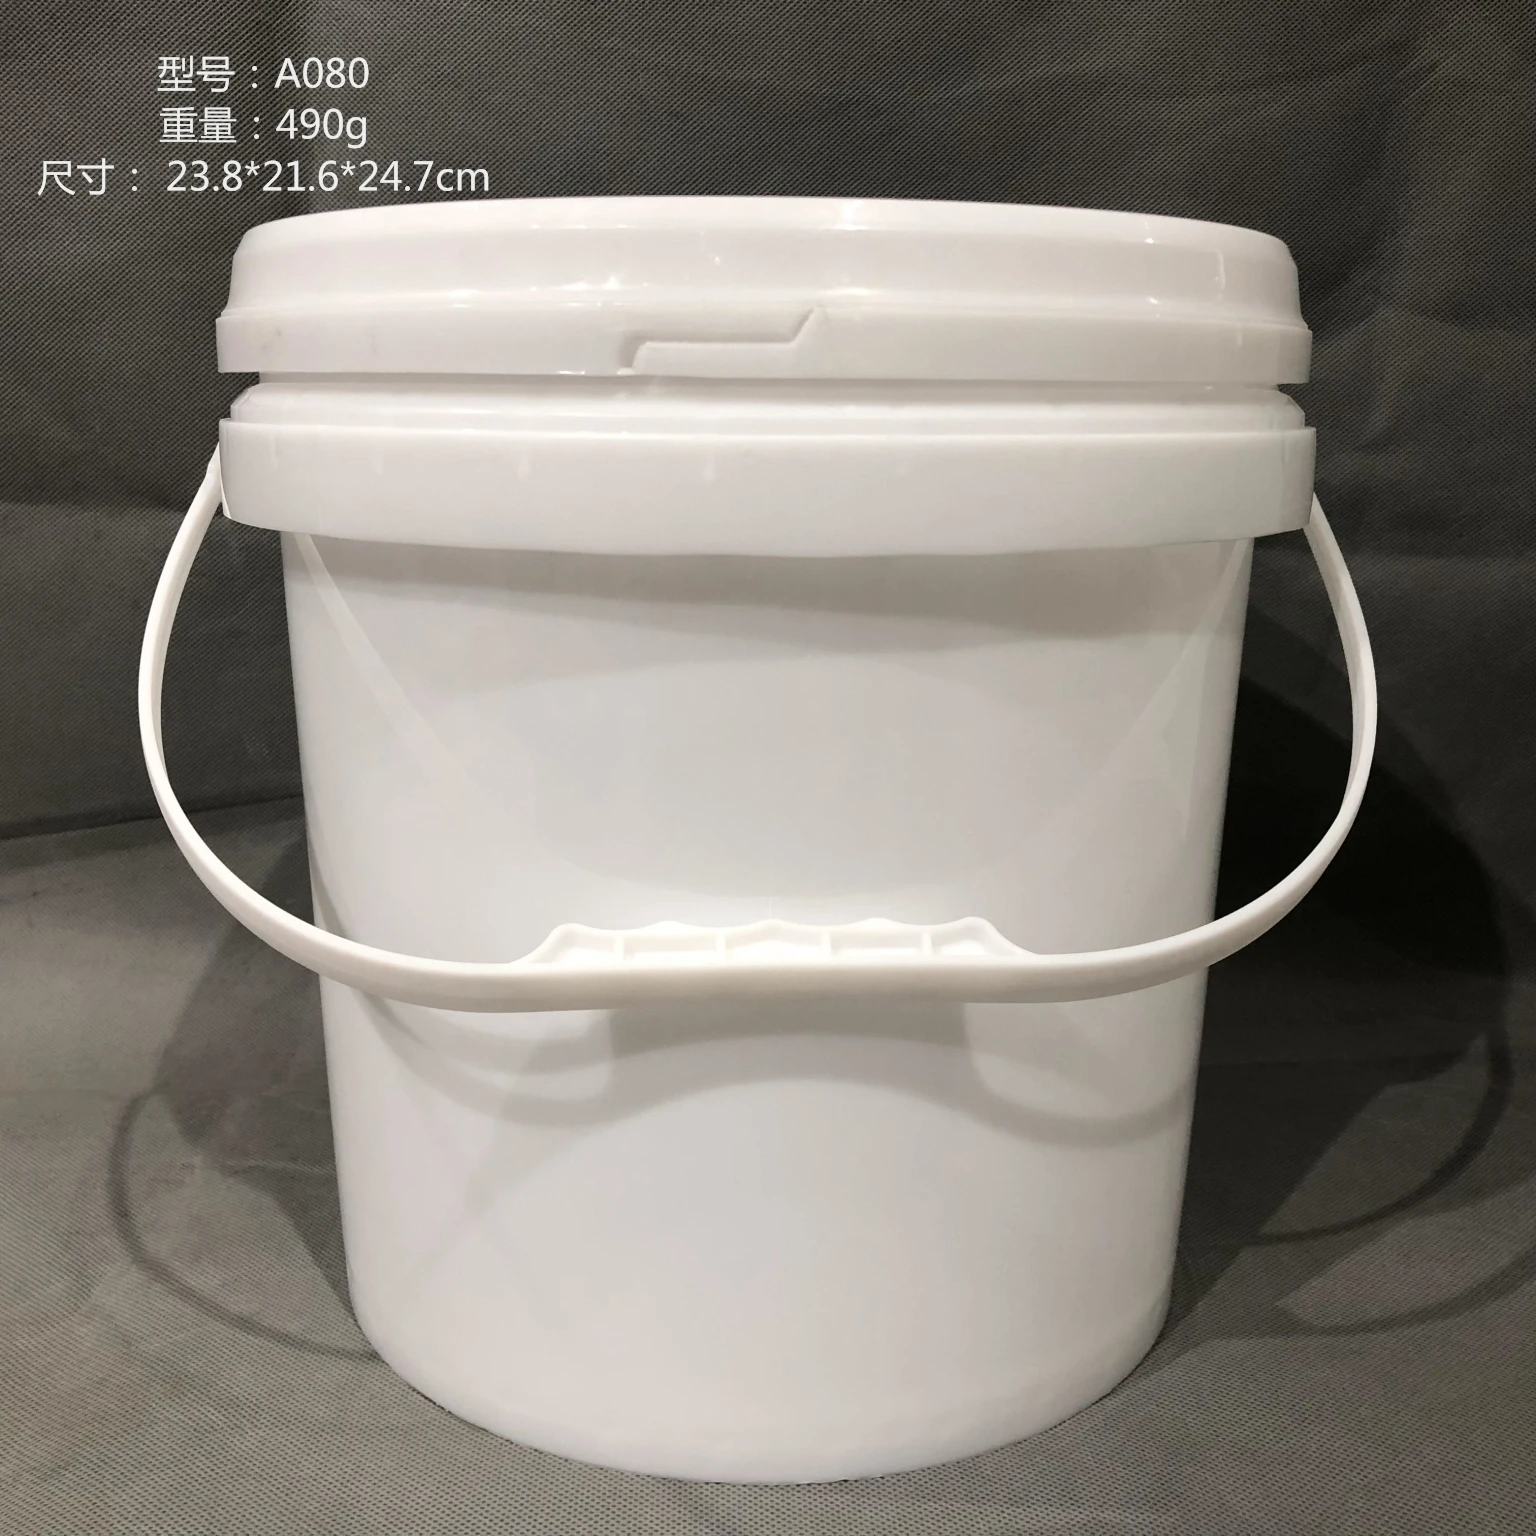 8L industrial buckets for heavy duty